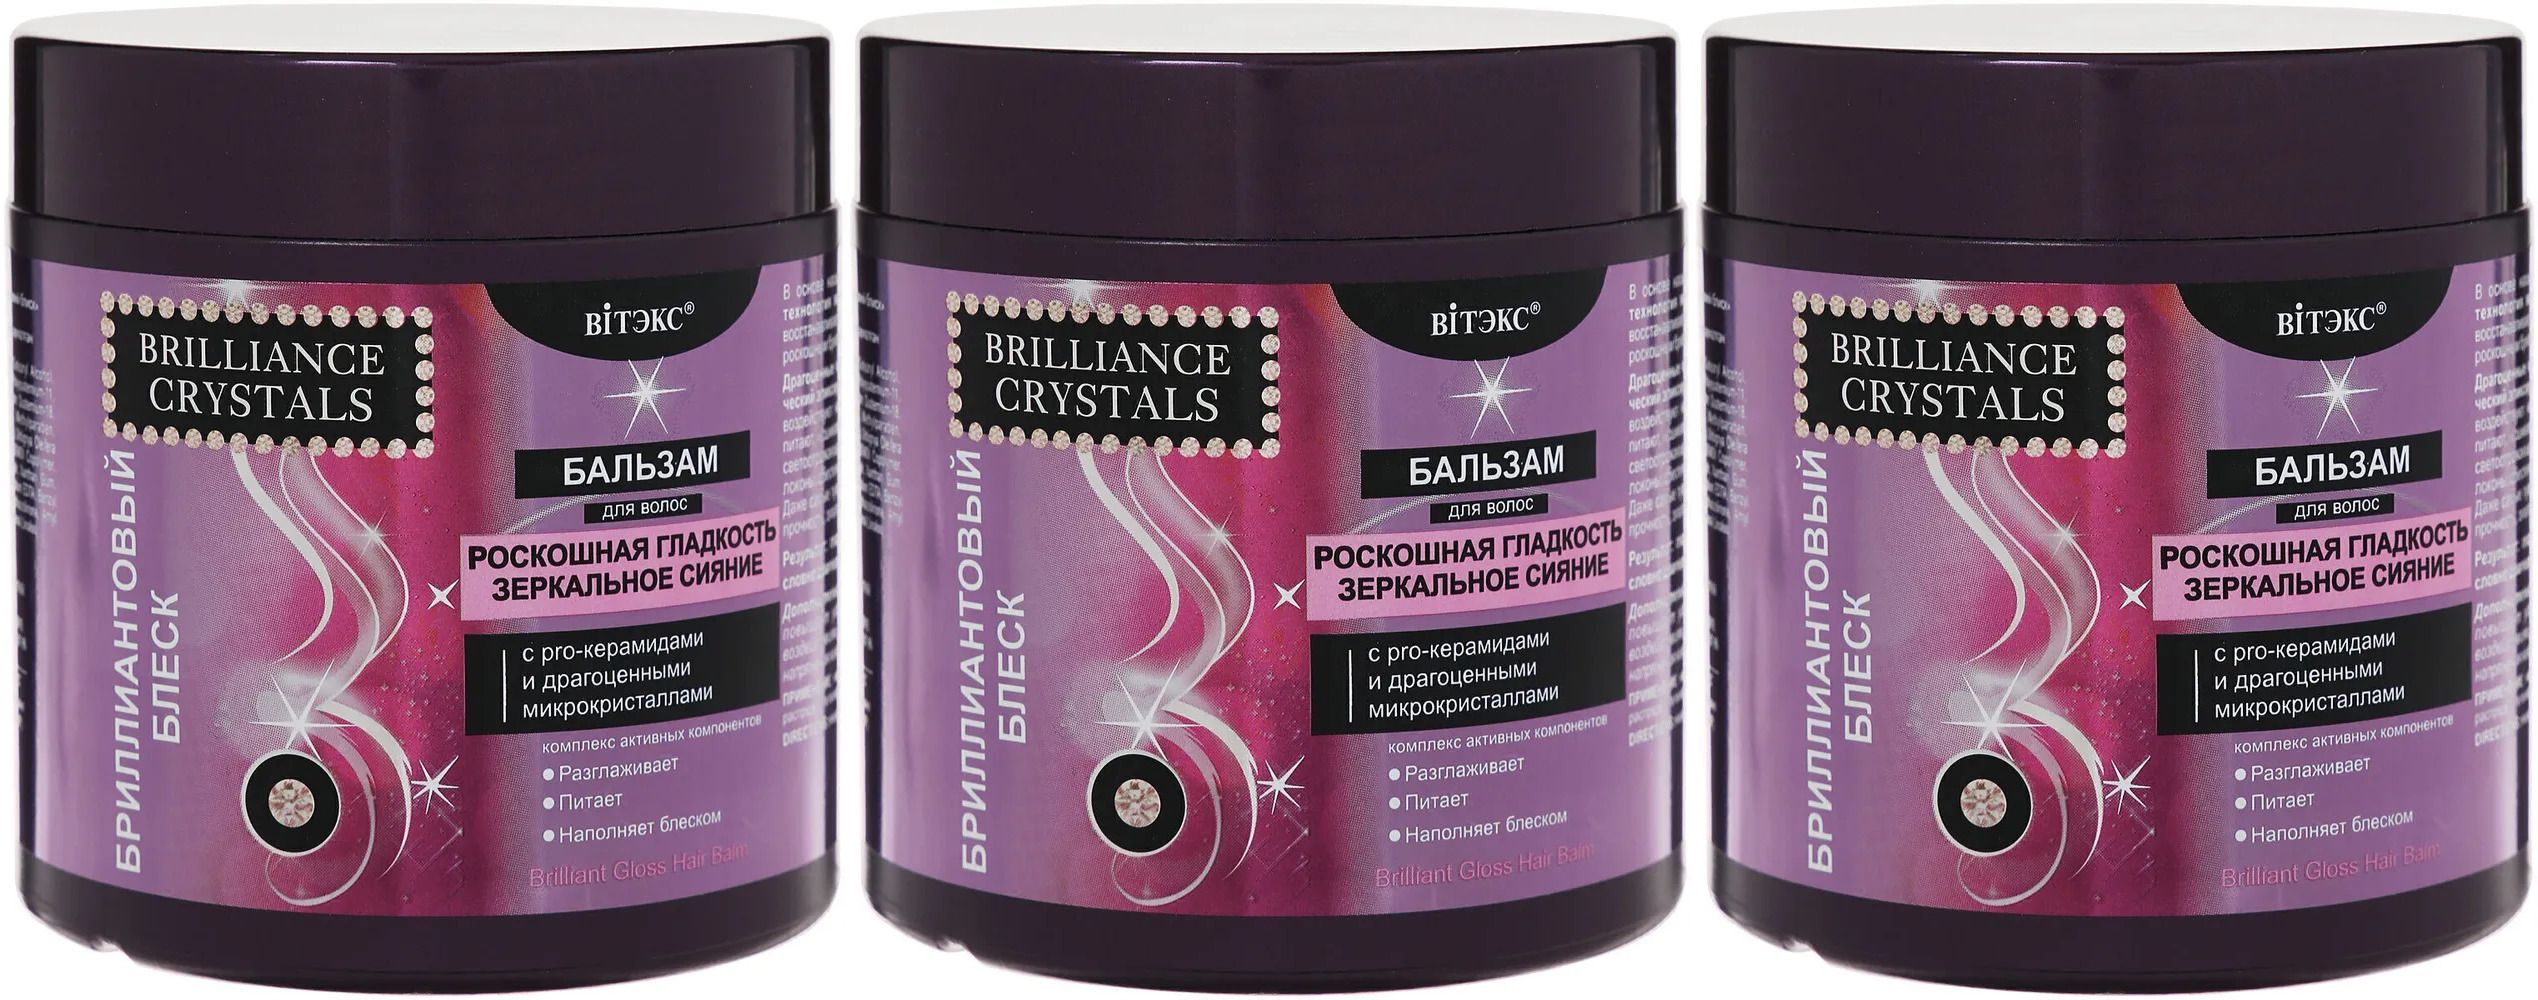 Витэкс Brilliance Cryst Бальзам для волос Бриллиантовый блеск, 400 мл.3шт.